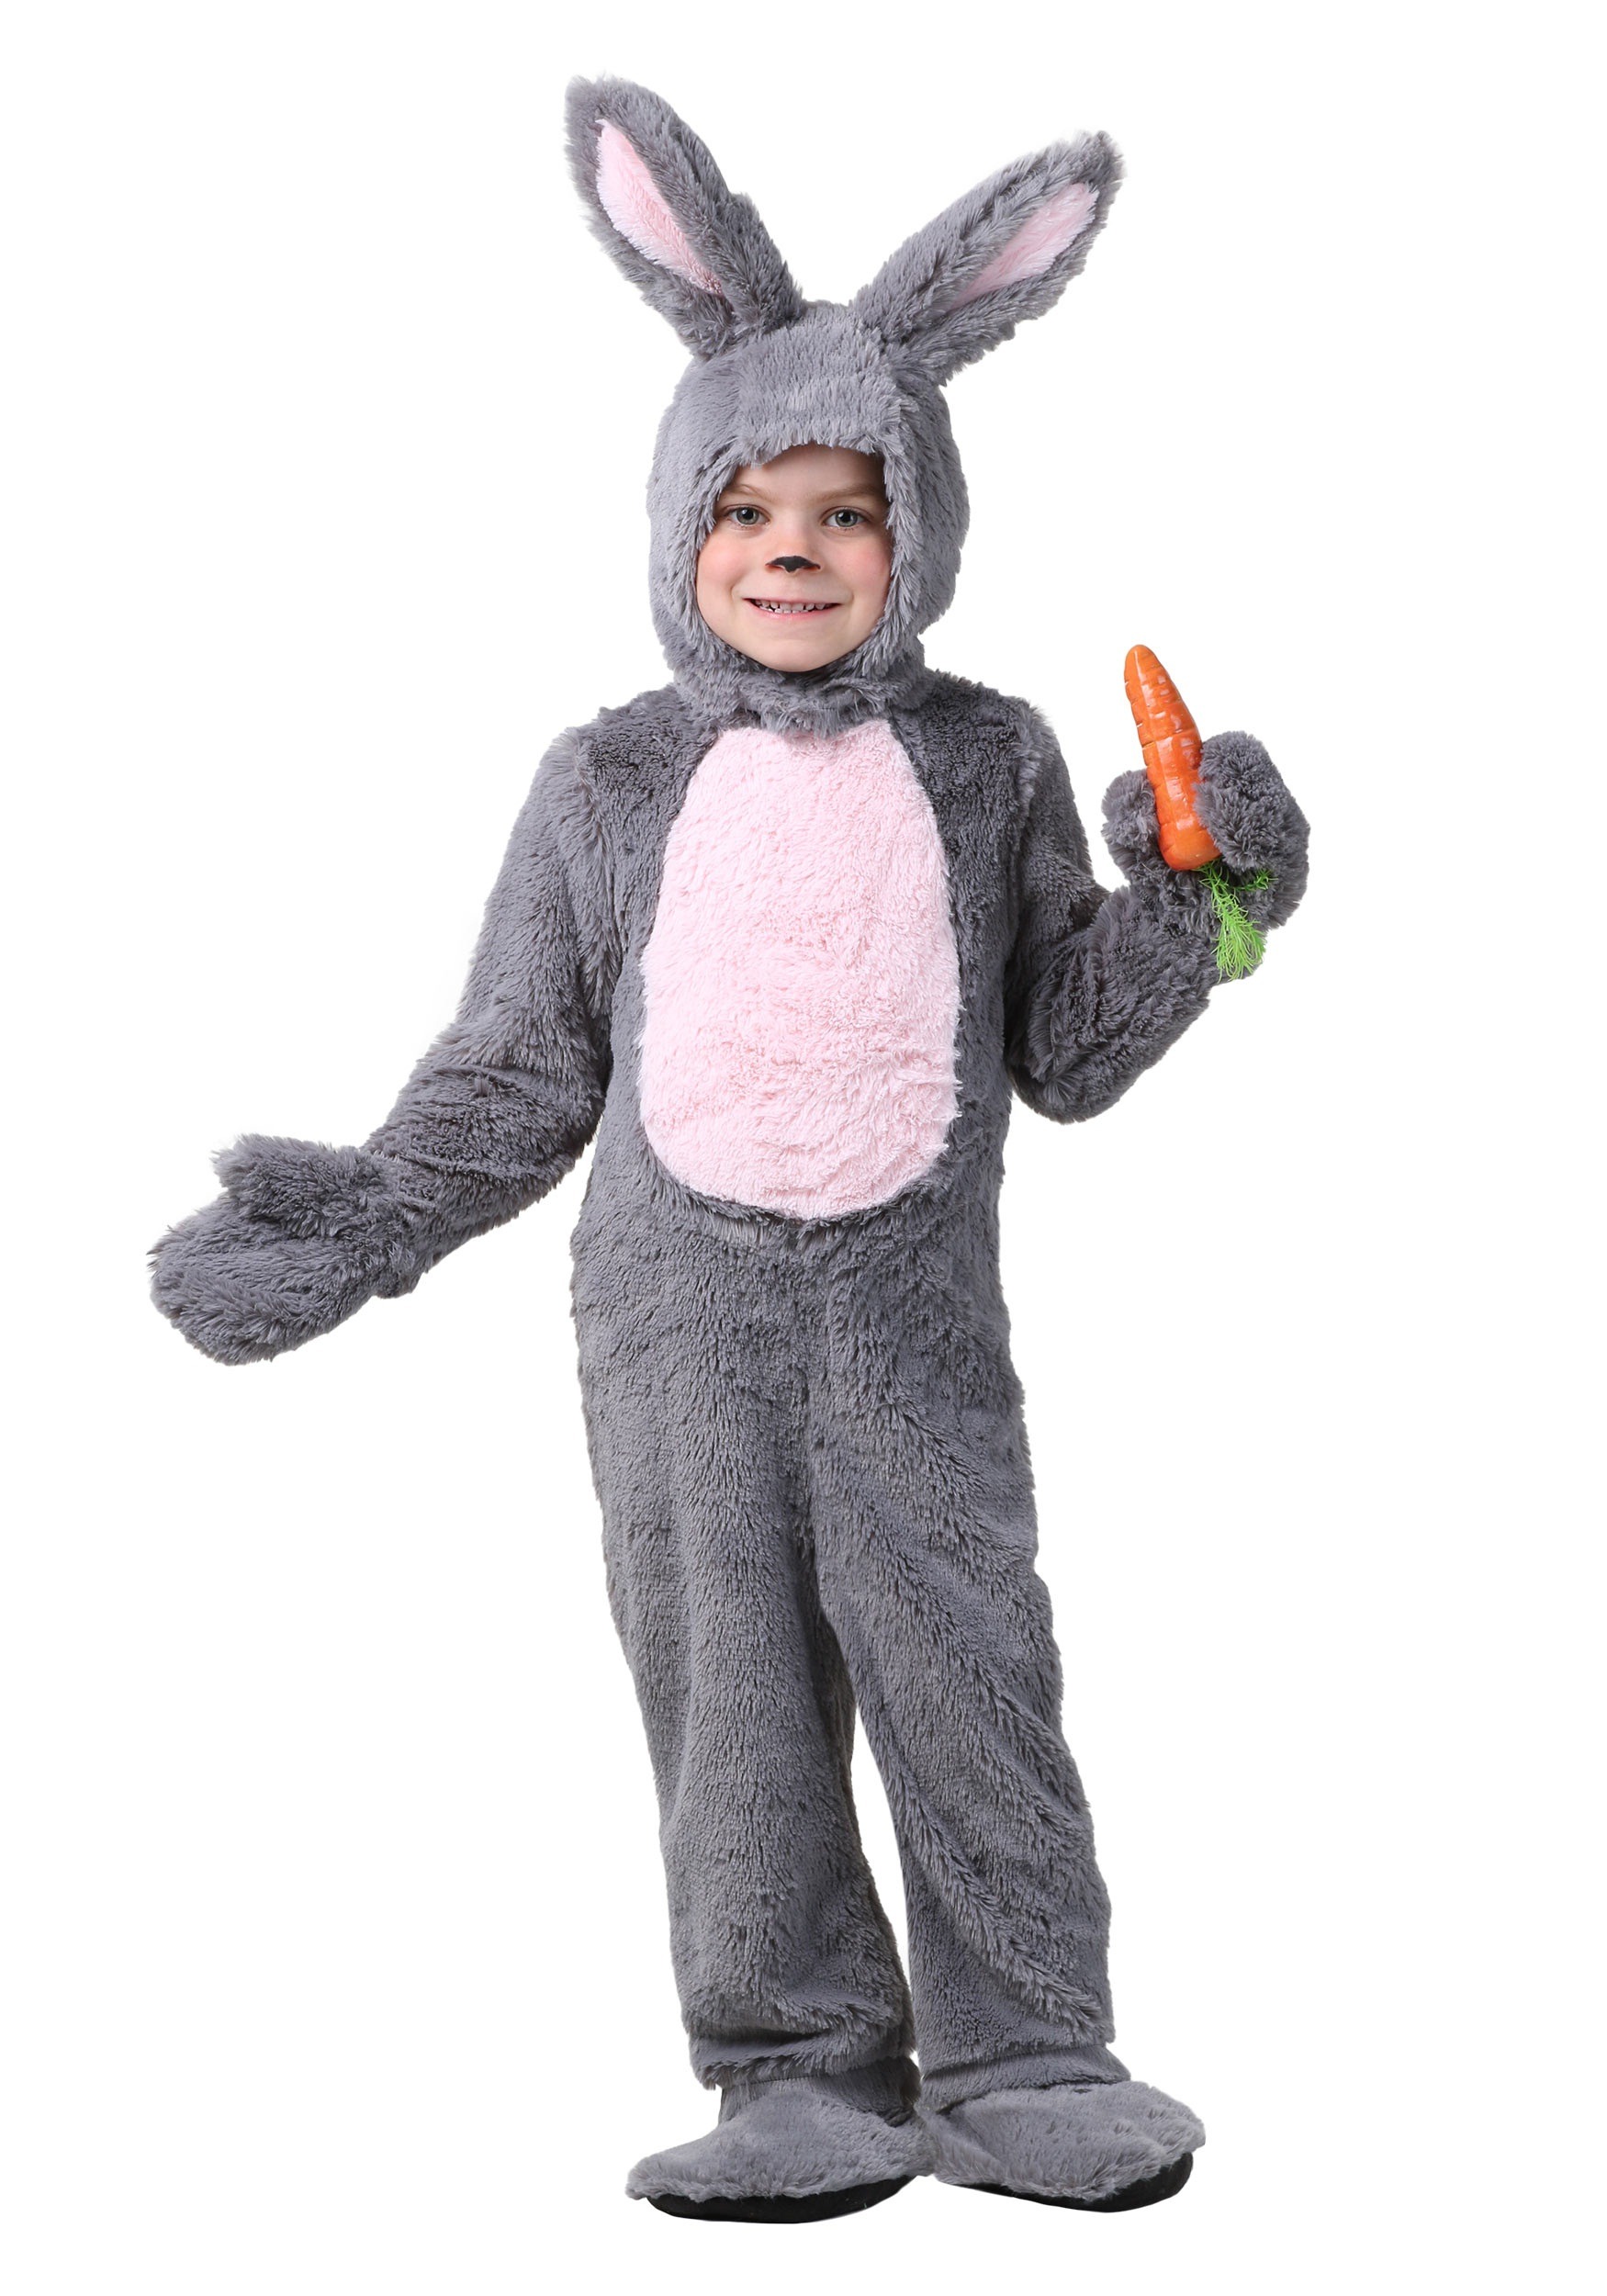 Bunny costume photo